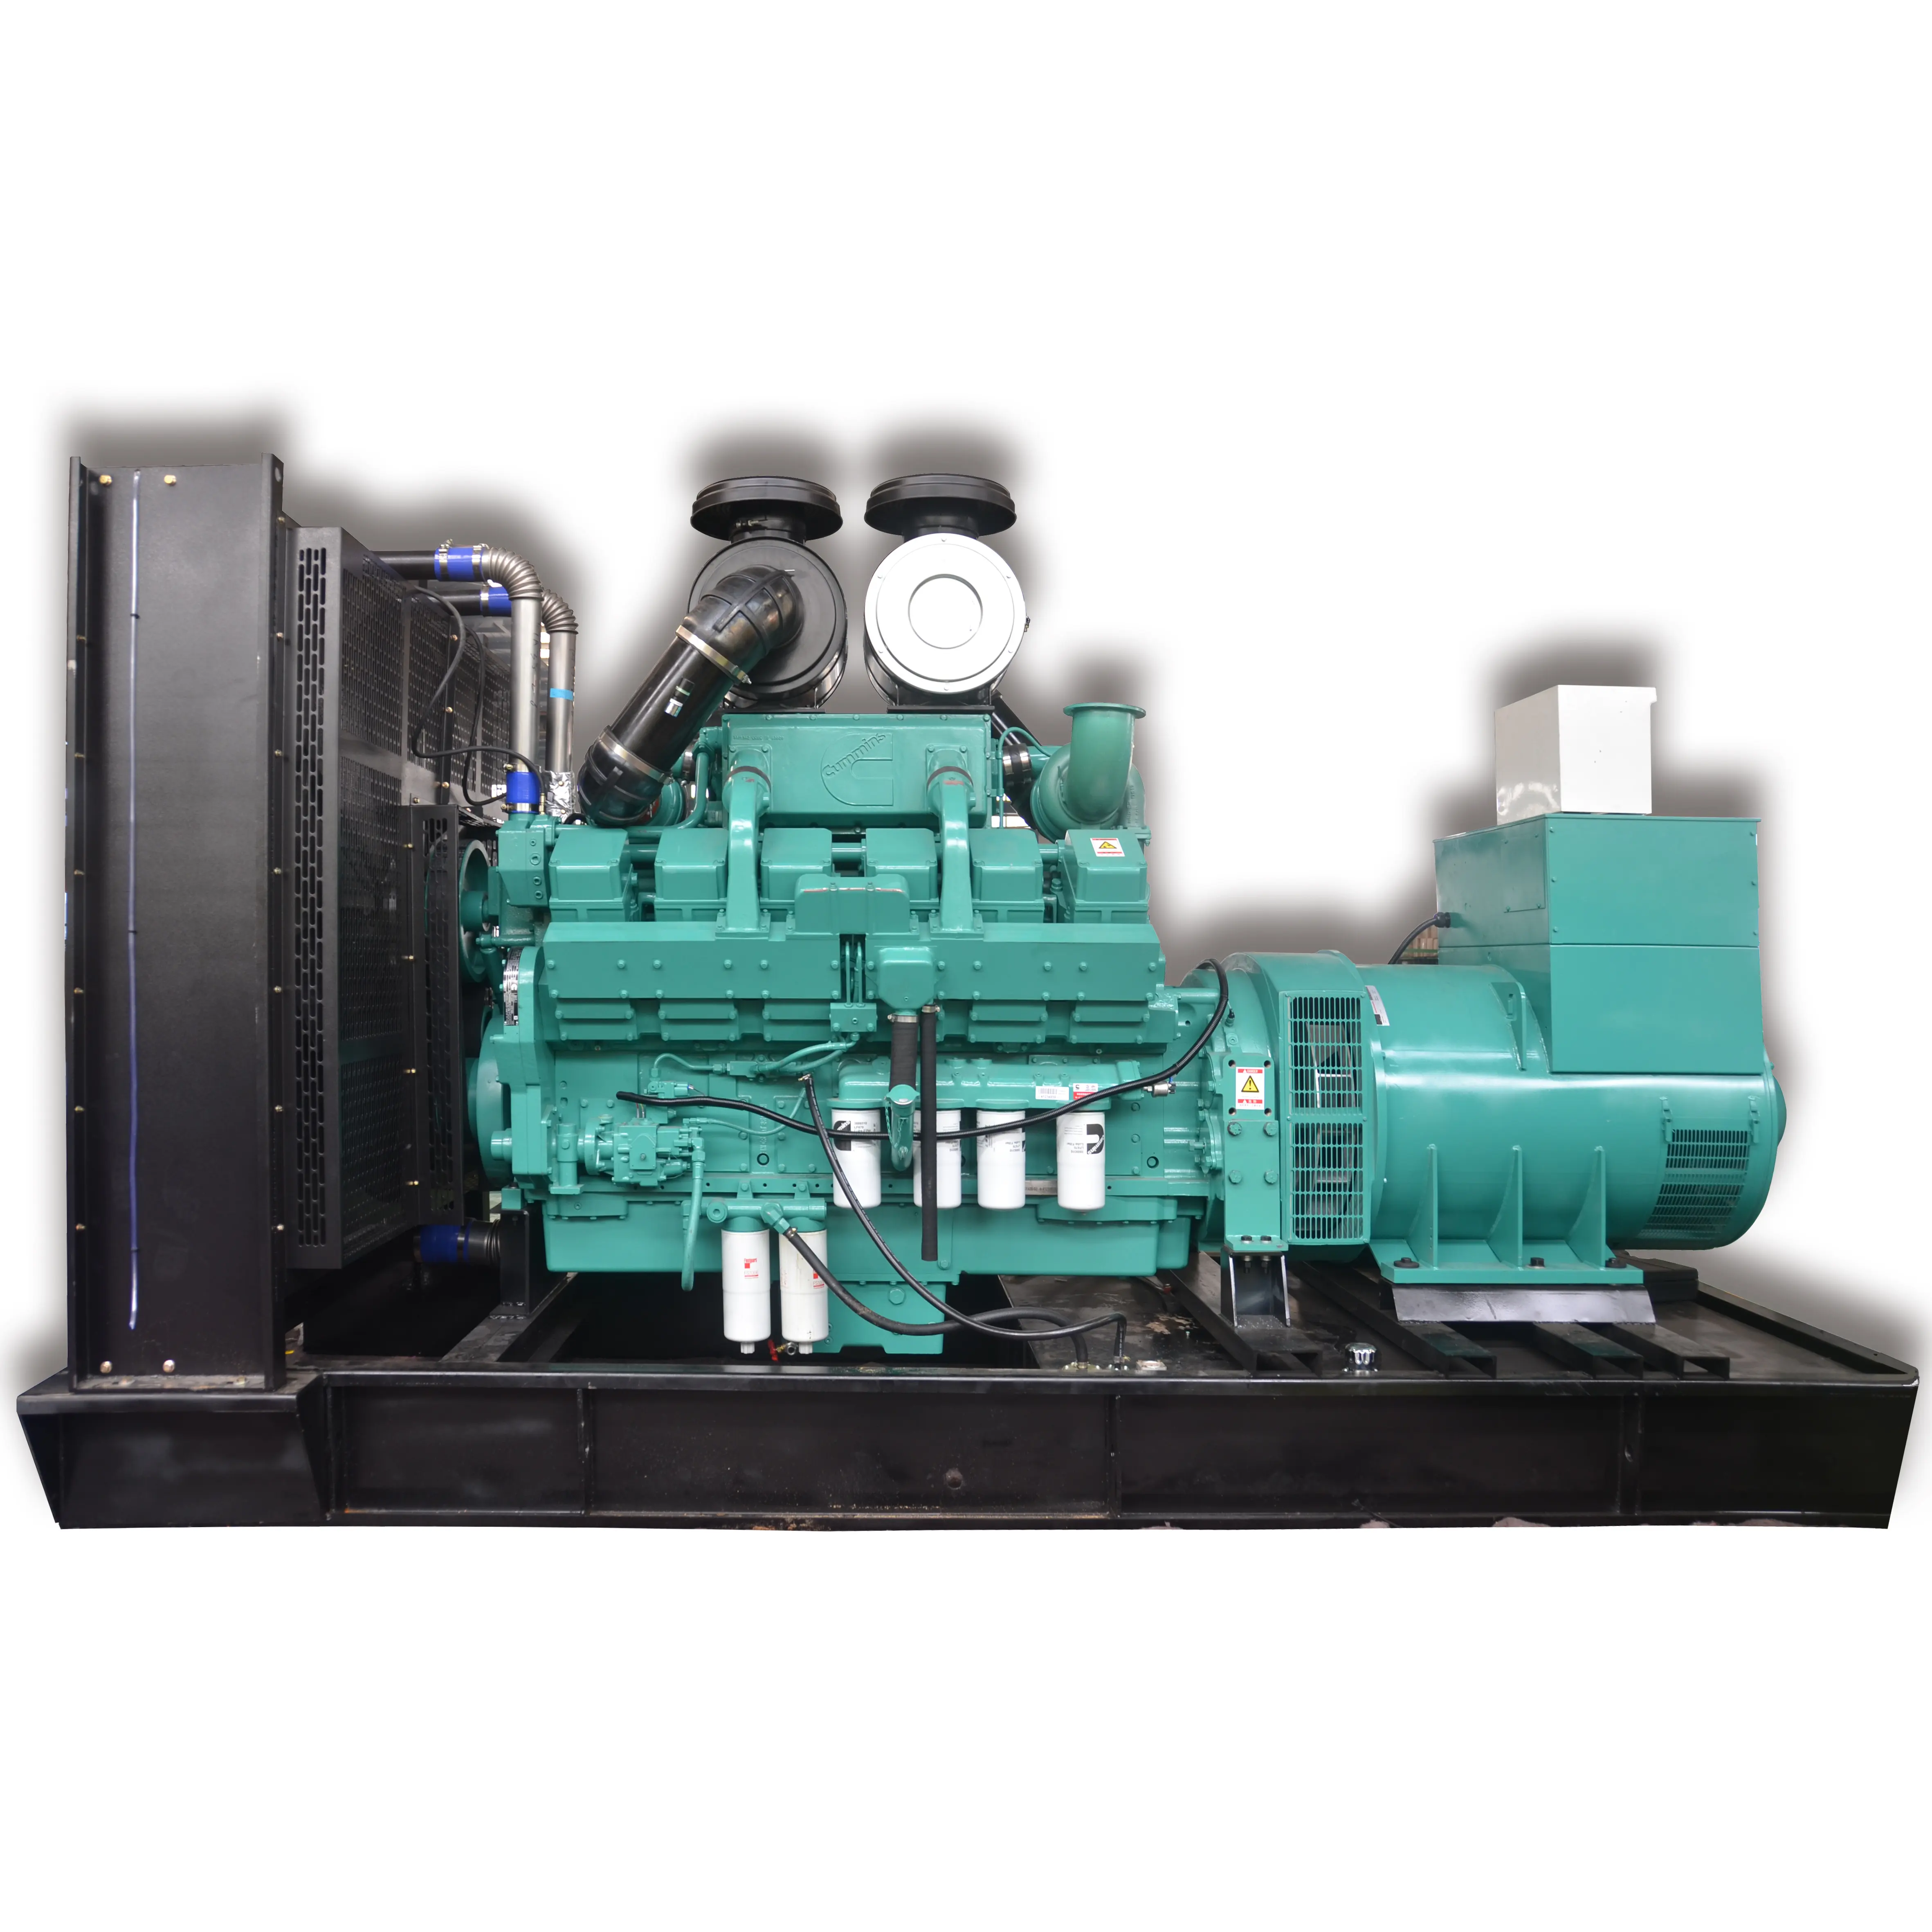 Hot selling emergency diesel generator containerized power plant 300kw diesel generator set